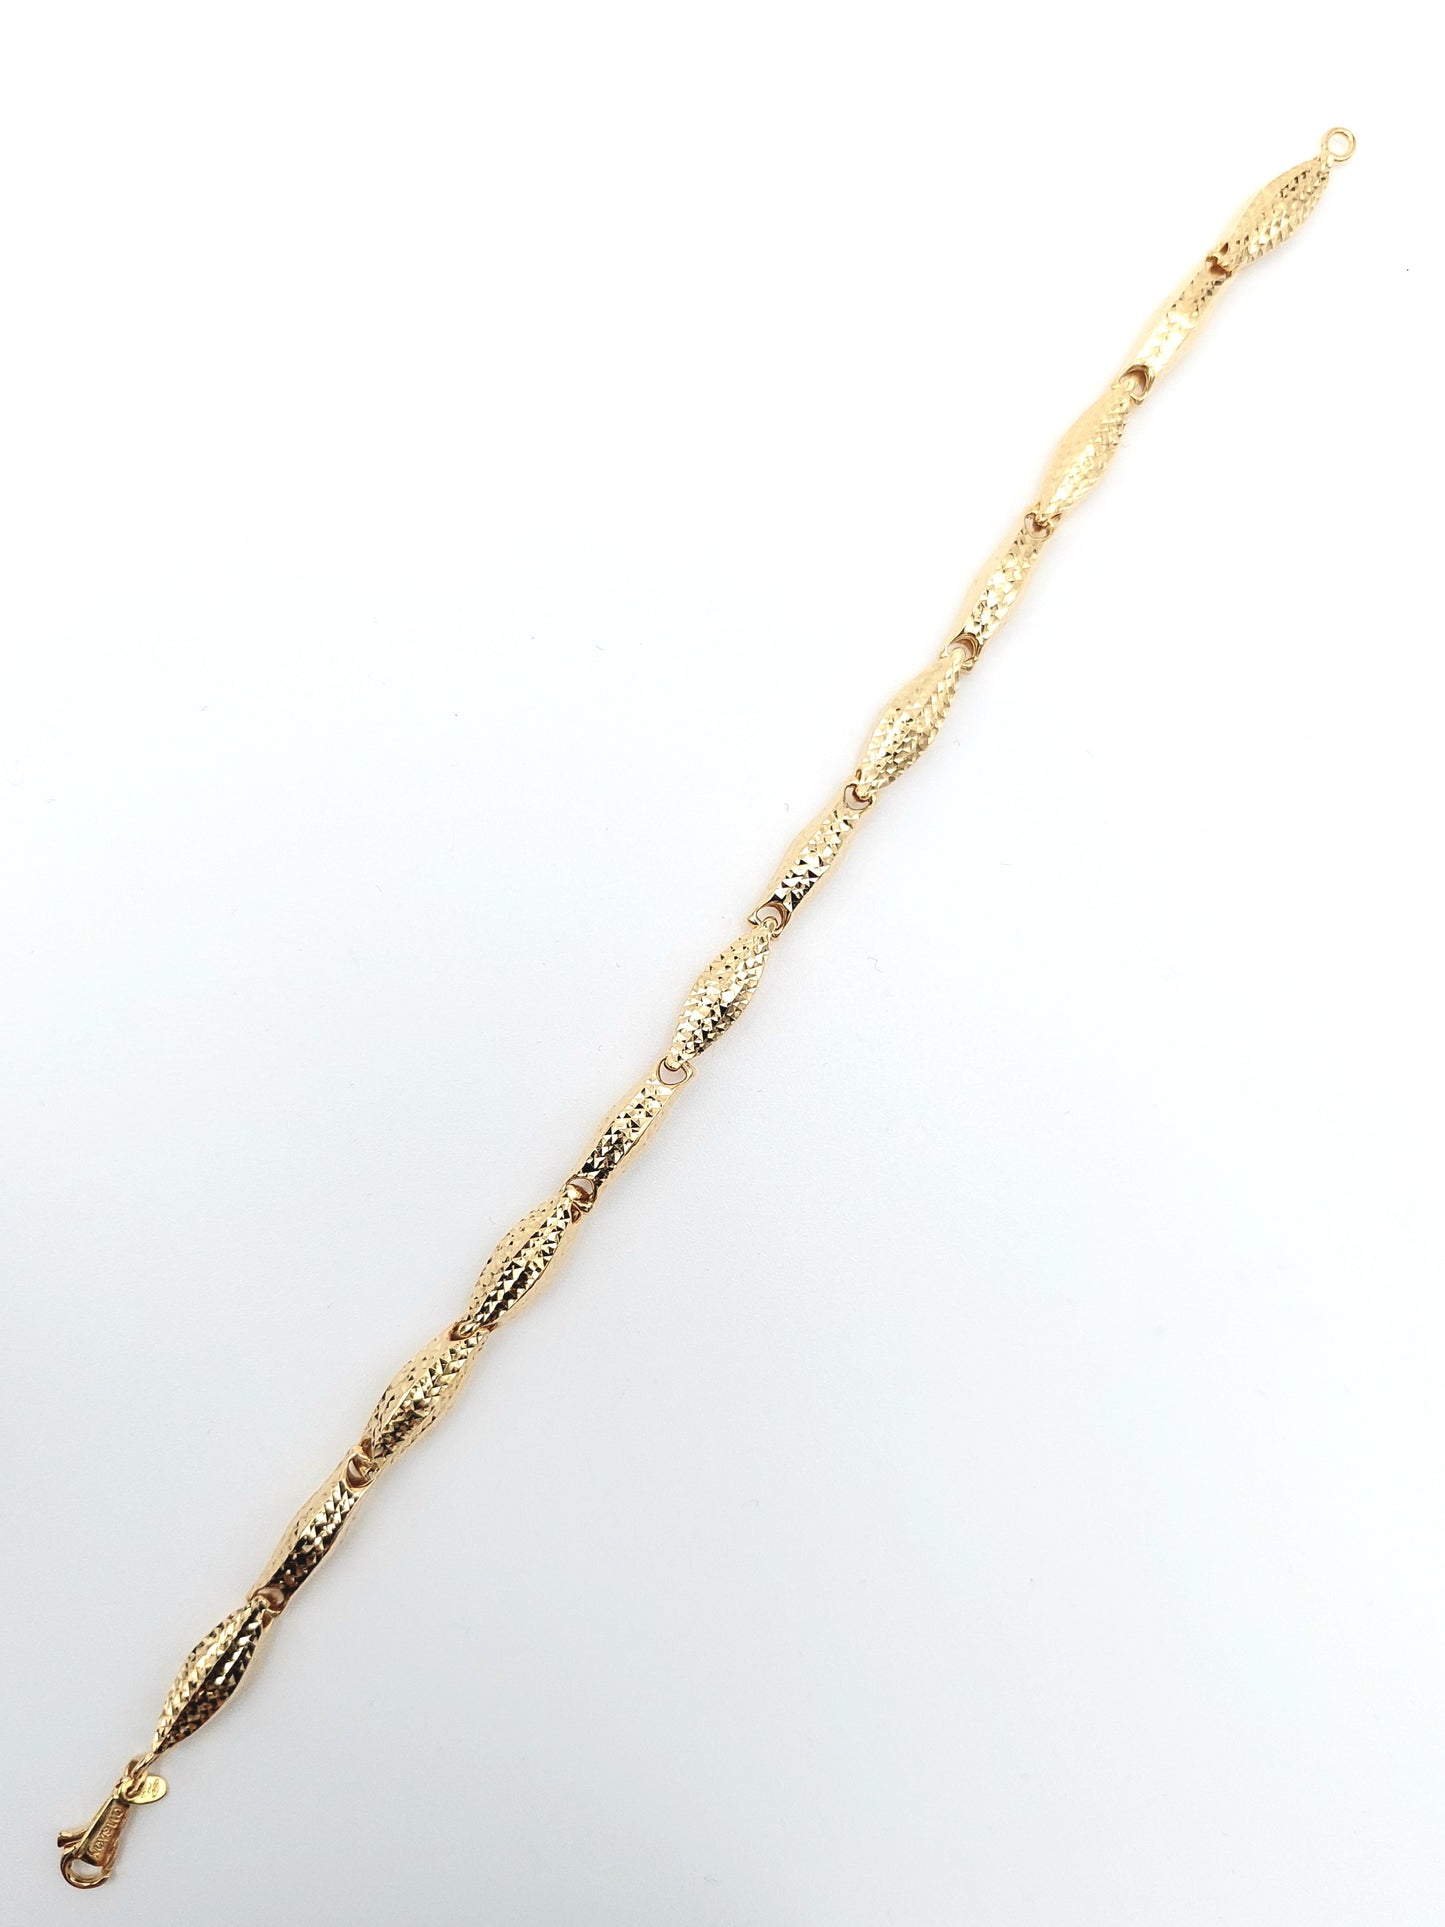 Bracciale da donna in oro 18 KT finitura diamantata,cm 21.BR-D-ORO024.